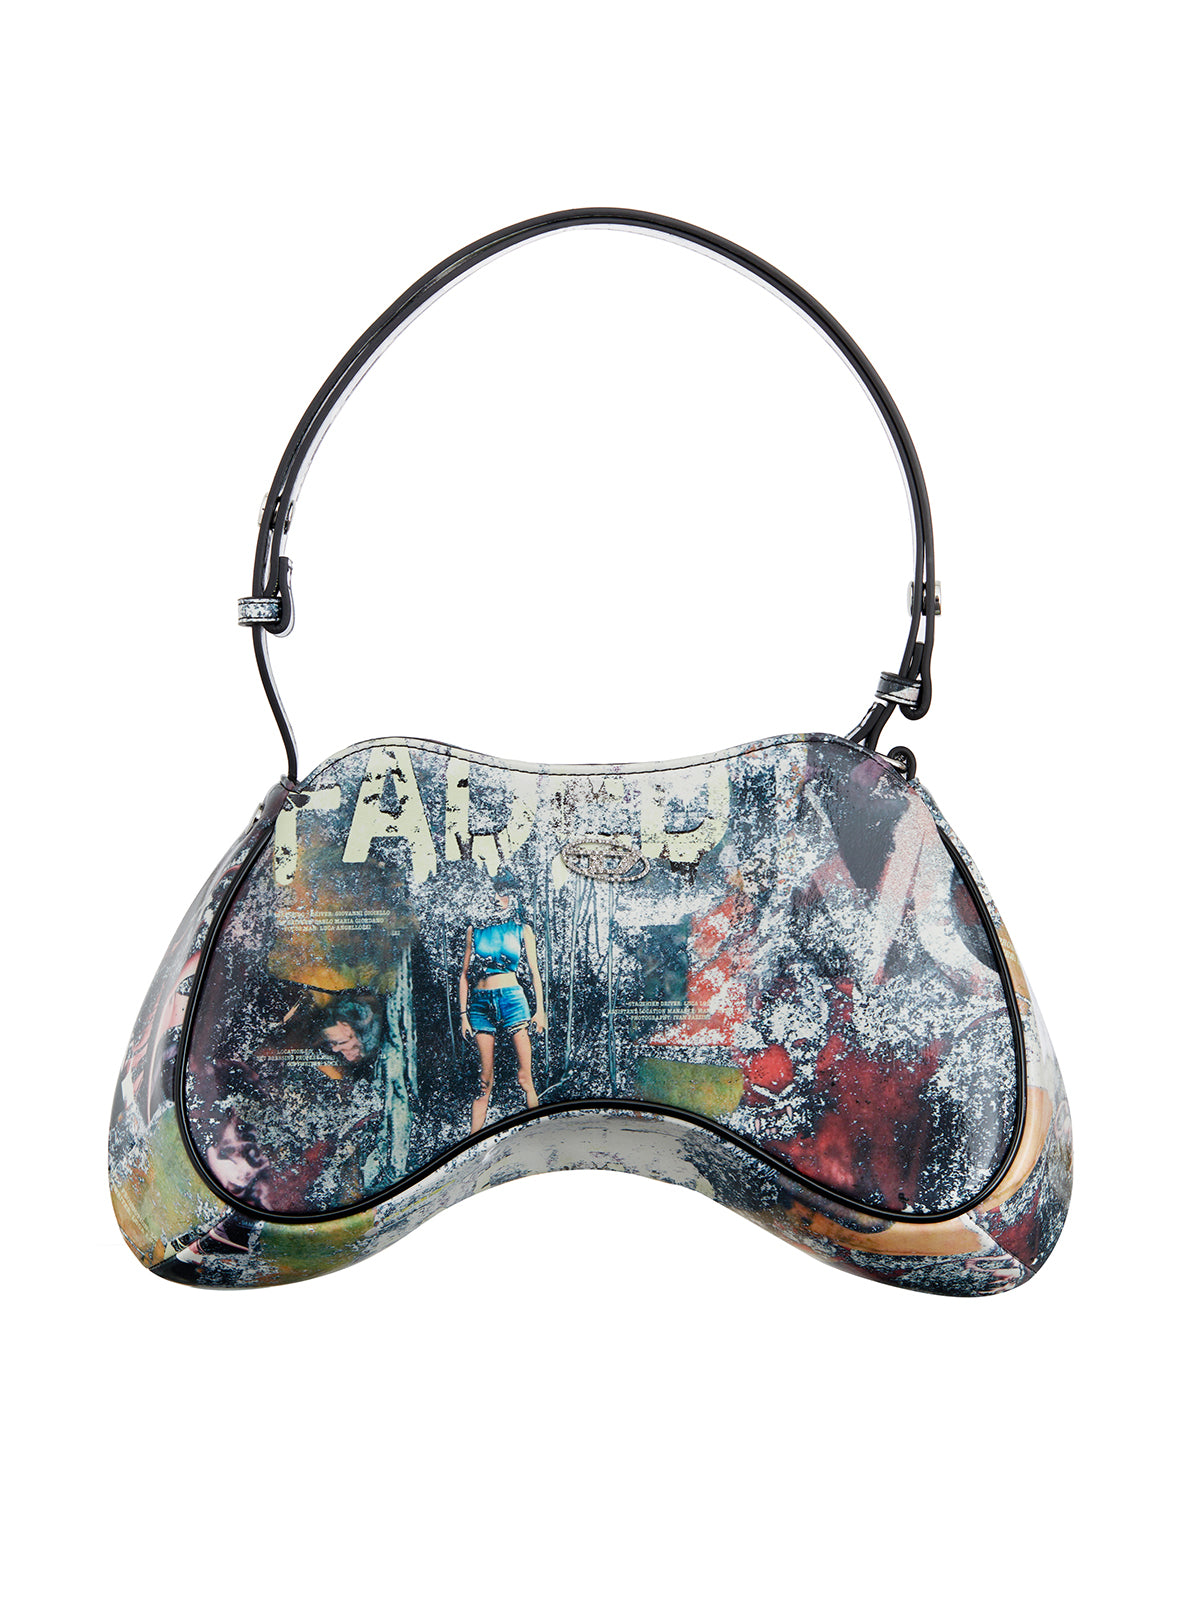 DIESEL Multicolor Leather Shoulder Bag for Women - Limited Edition